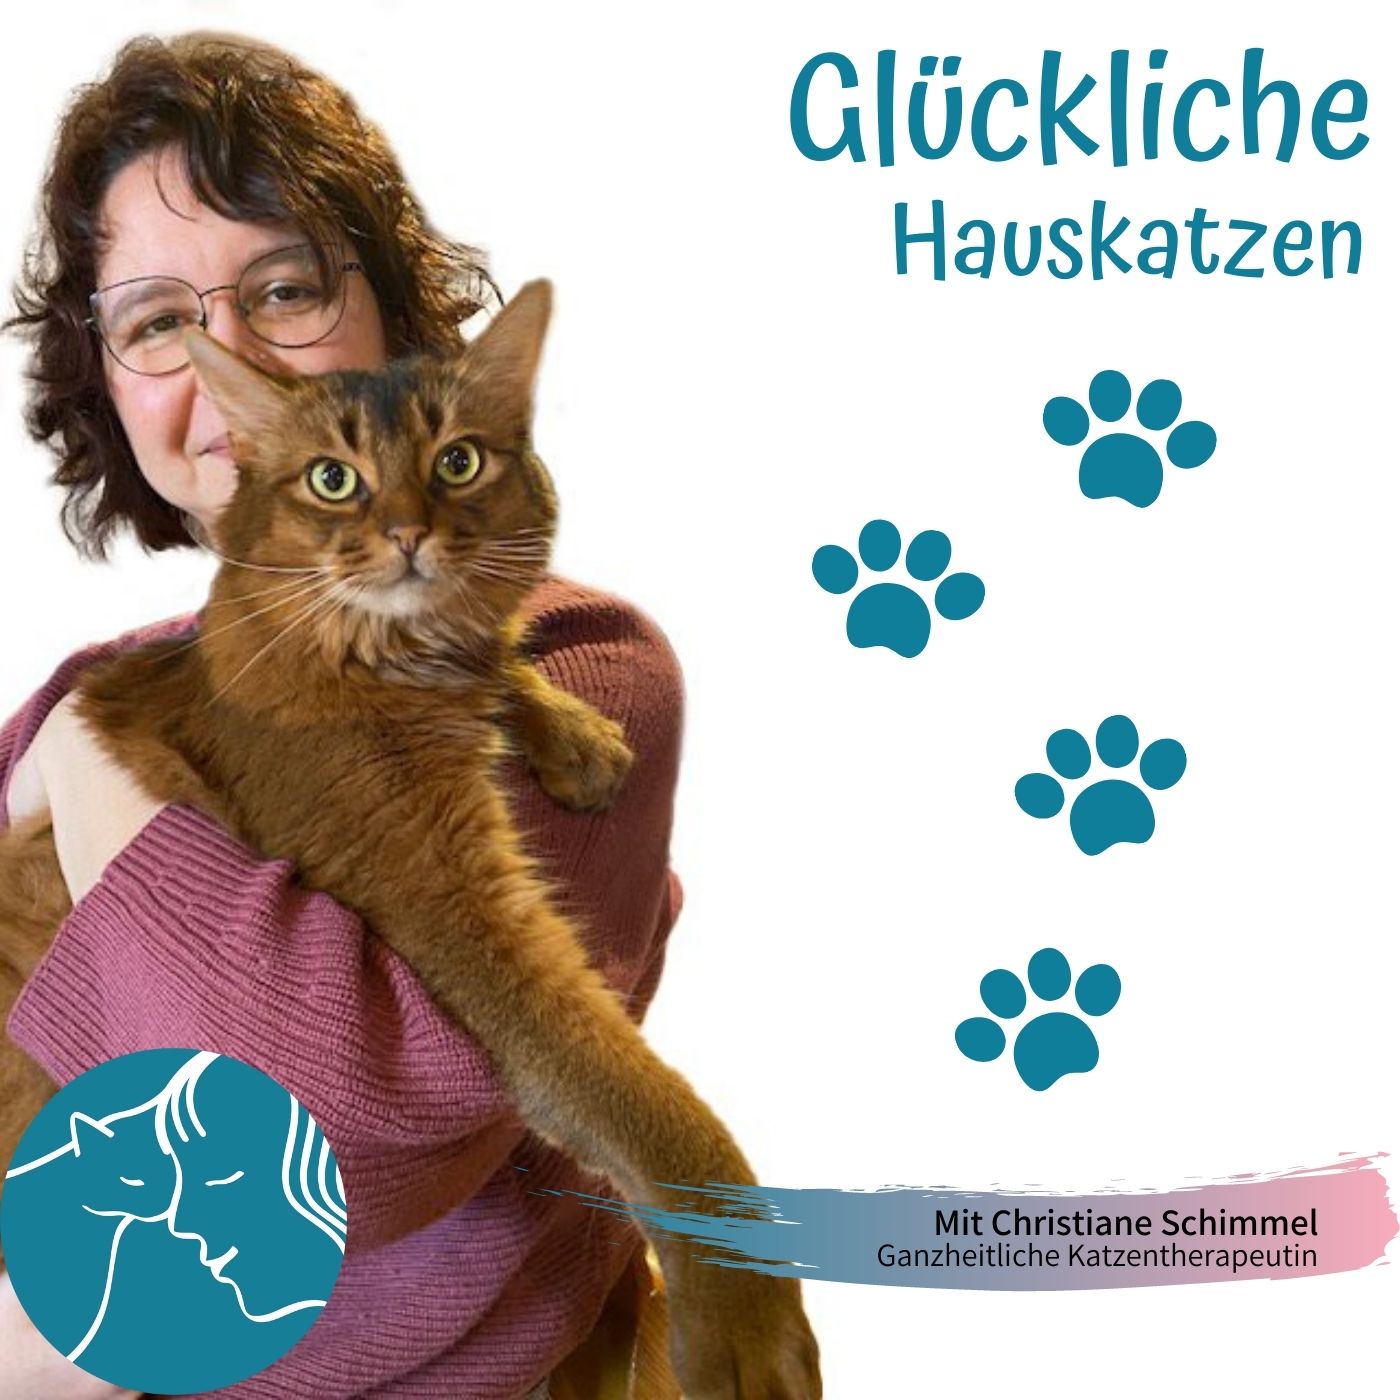 14 Ein Interview von Sissy Rauscher mit mir über Katzen, was sie mit unserer Gesundheit zu tun haben und mehr